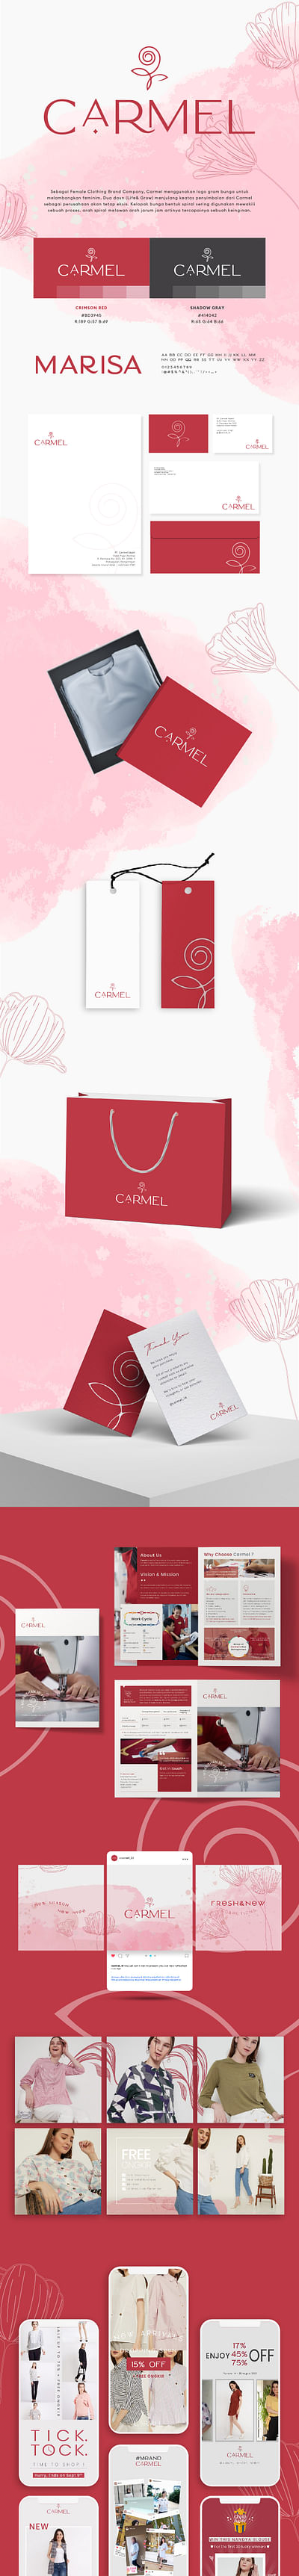 Branding for CARMEL - Social Media